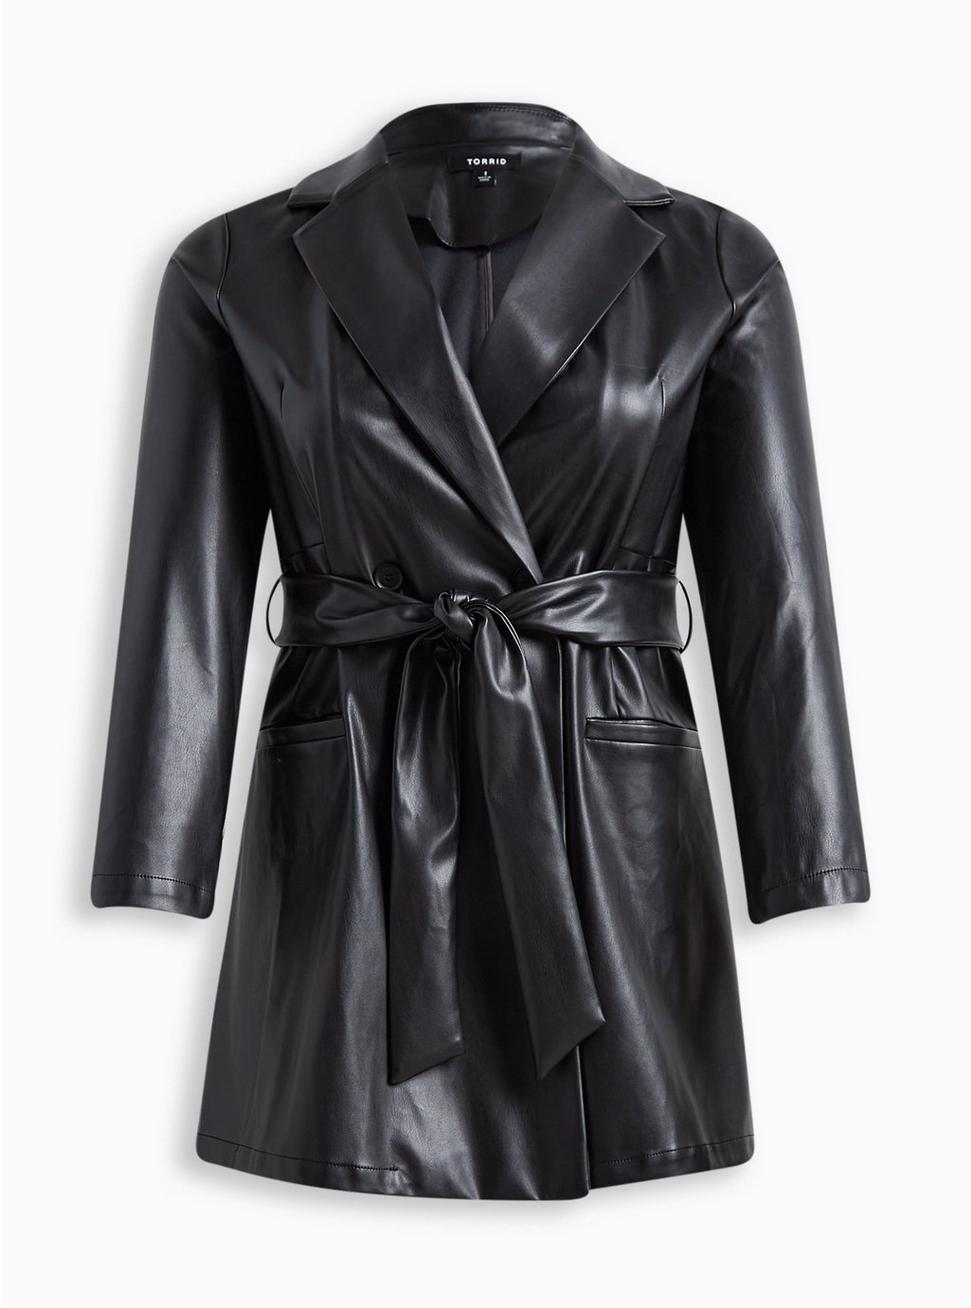 Plus Size Faux Leather Tie Waist Jacket, DEEP BLACK, hi-res